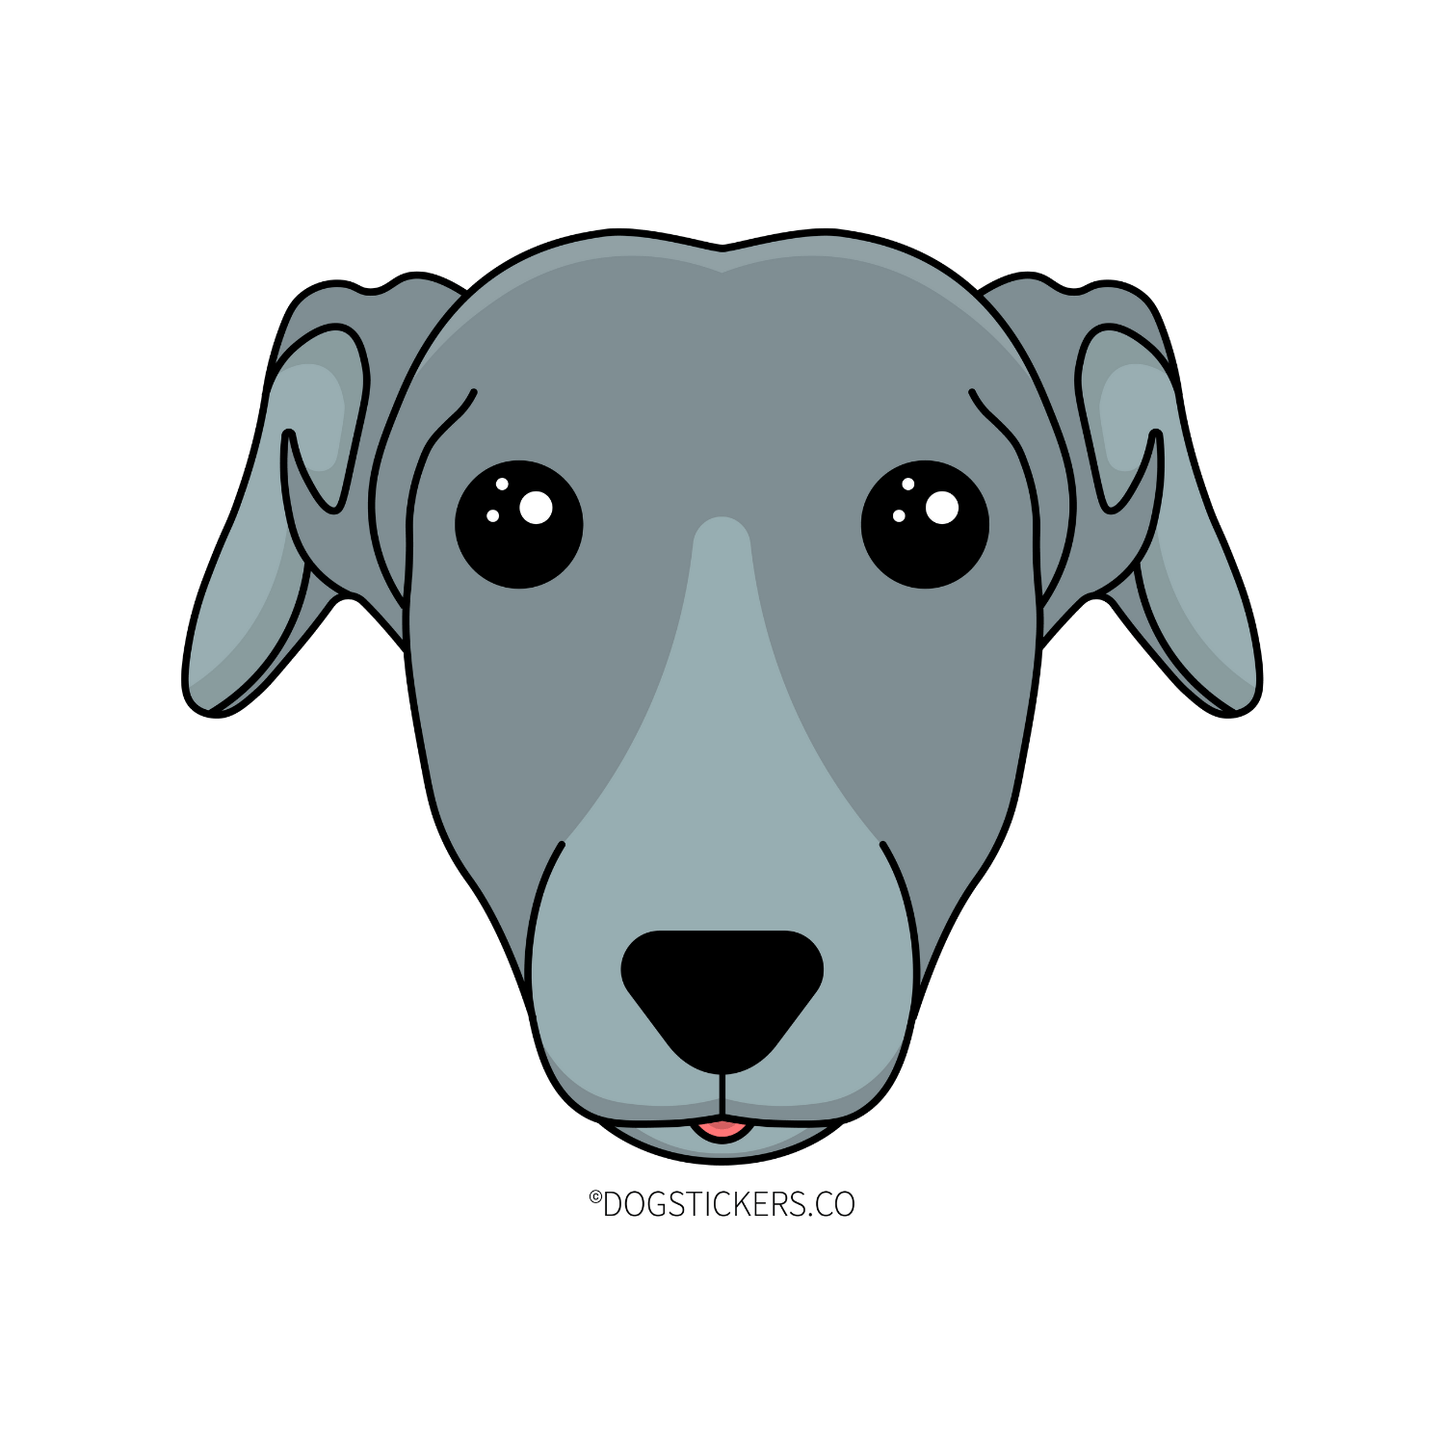 Greyhound Sticker - Dogstickers.co